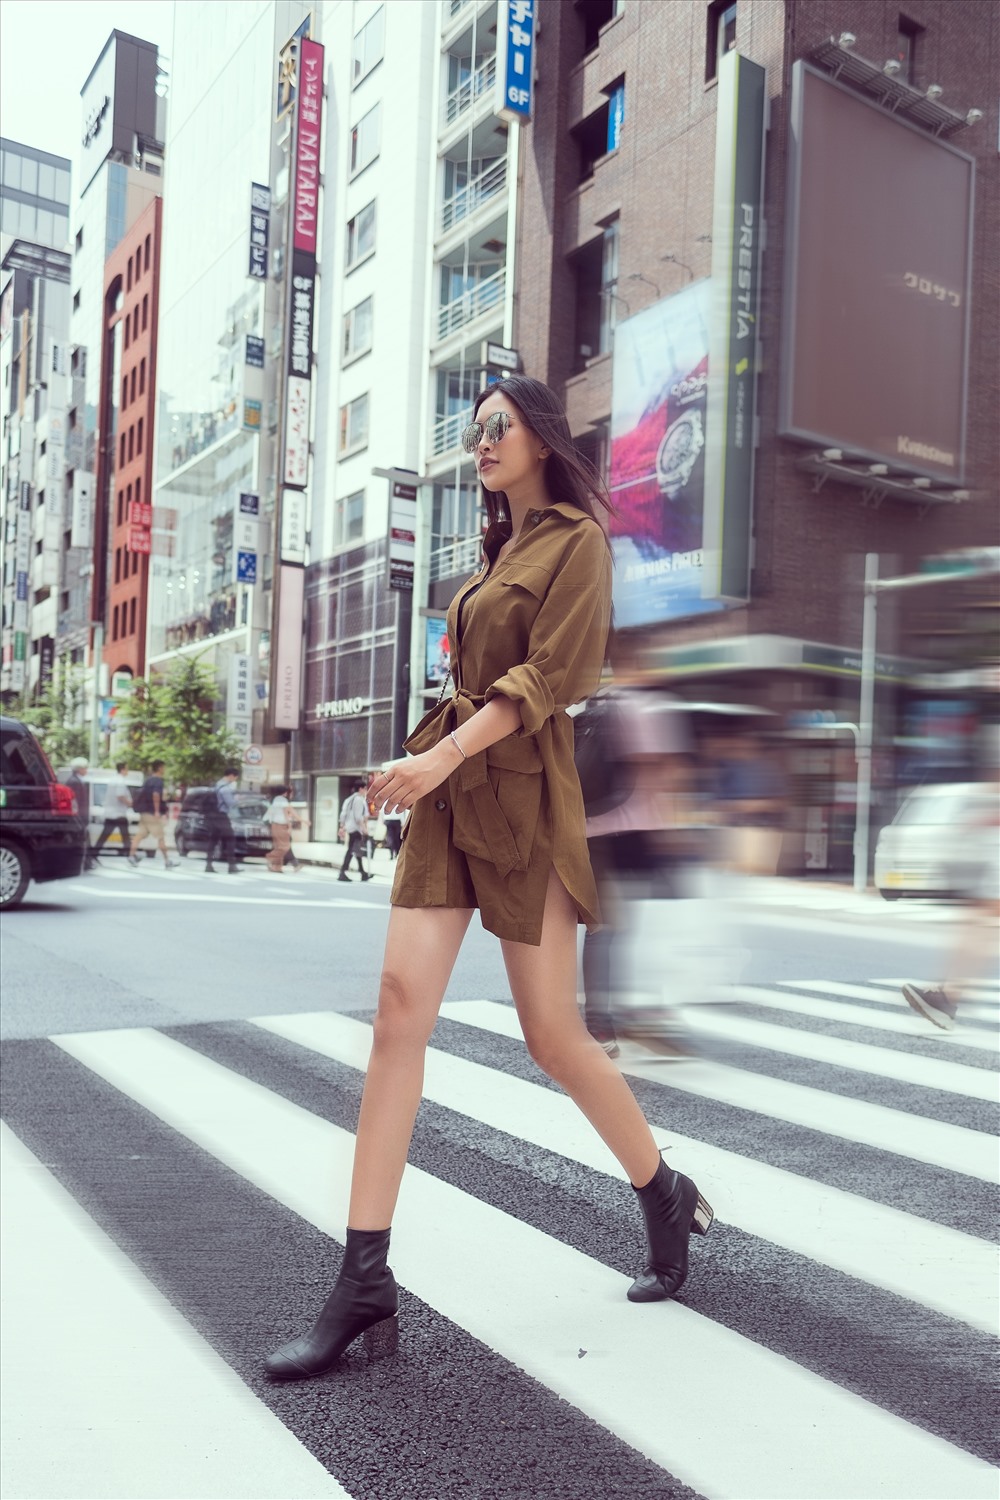 Mới đây, những hình ảnh của Tiểu Vy với phong cách thời trang đơn giản trên đường phố Nhật Bản đã nhận được nhiều lời khen từ người hâm mộ. Ảnh: Tuấn Khải – Viết Quý.